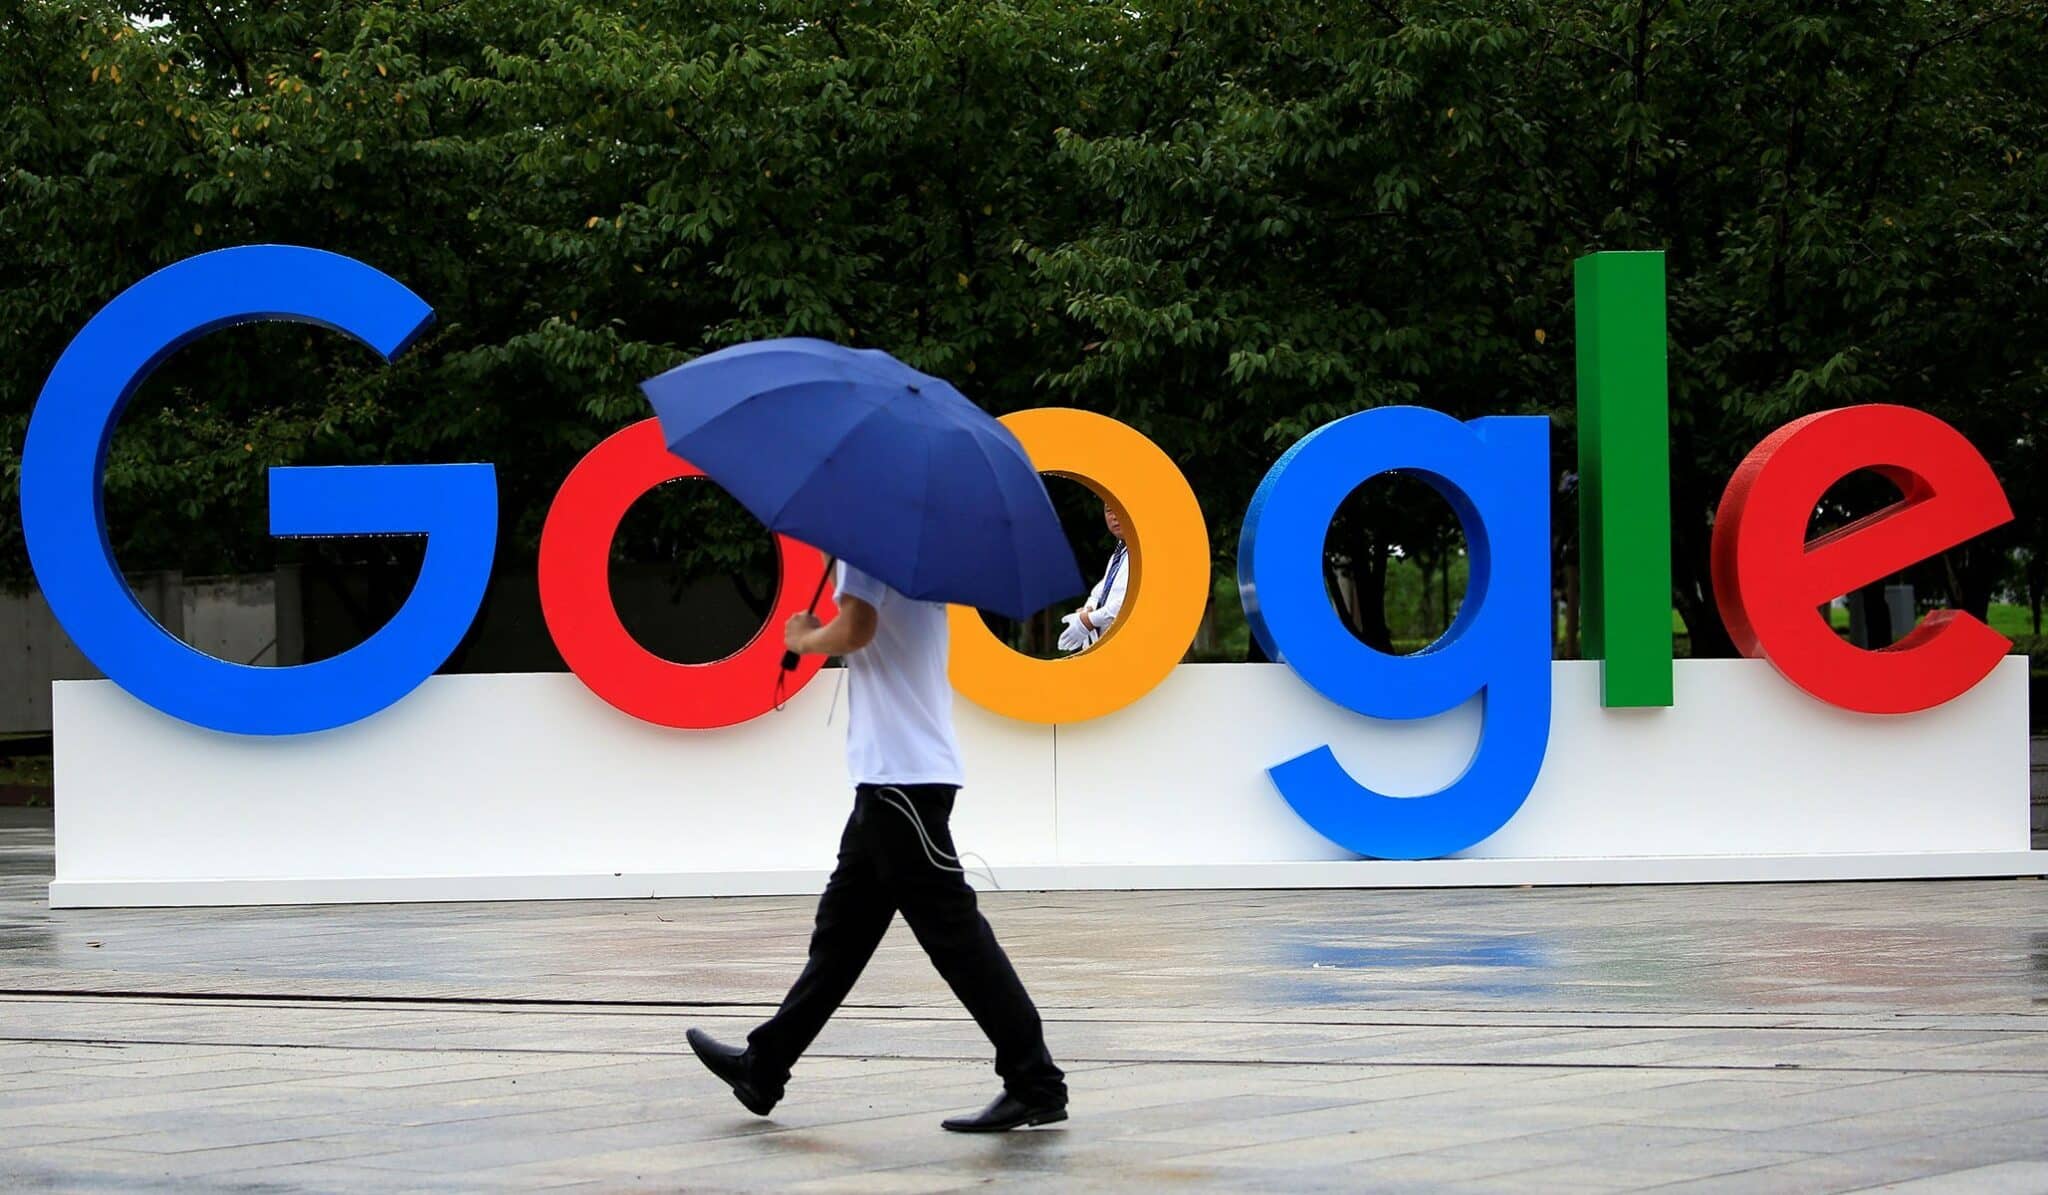 جوجل تحث الاتحاد الأوروبي على إعادة النظر في قواعد حقوق النشر